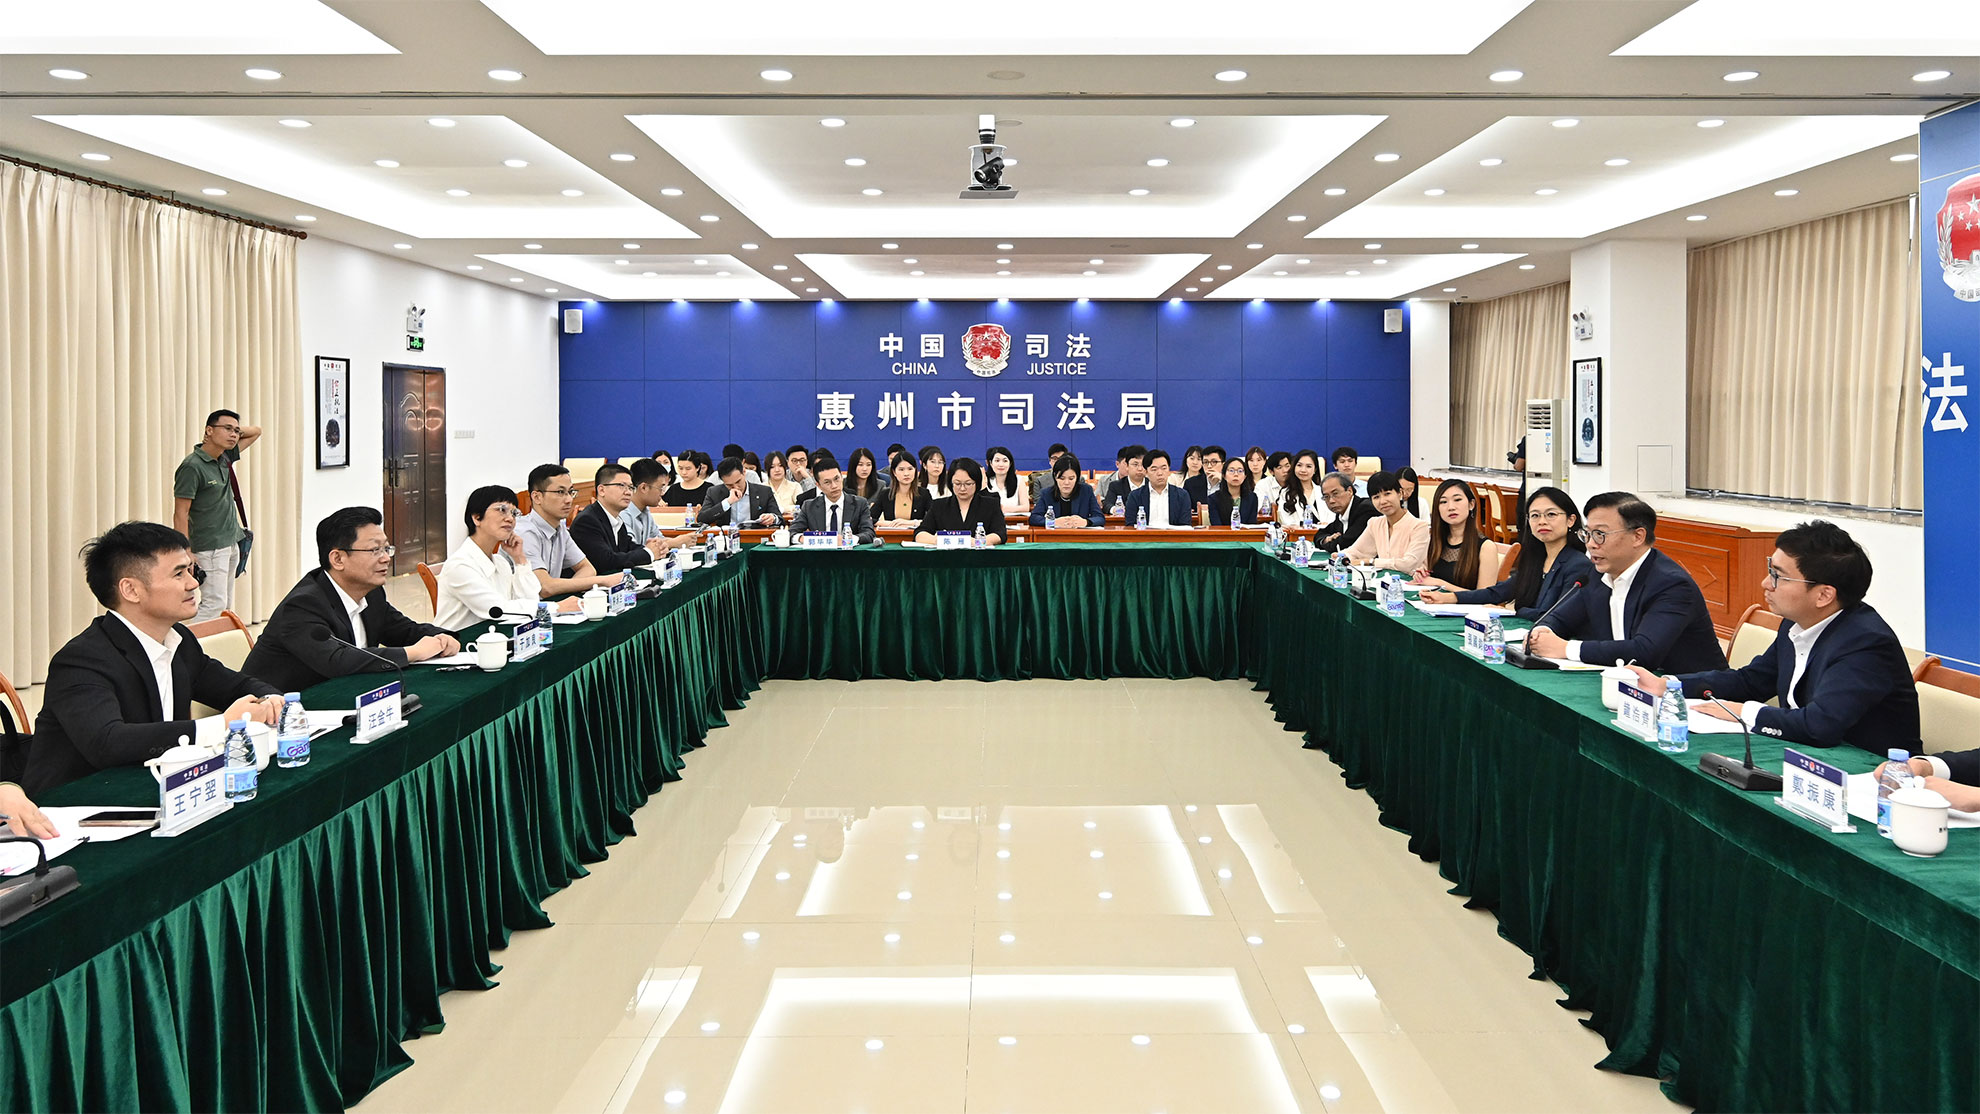 律政司副司长率领青年法律业界代表团拜会惠州市人民政府